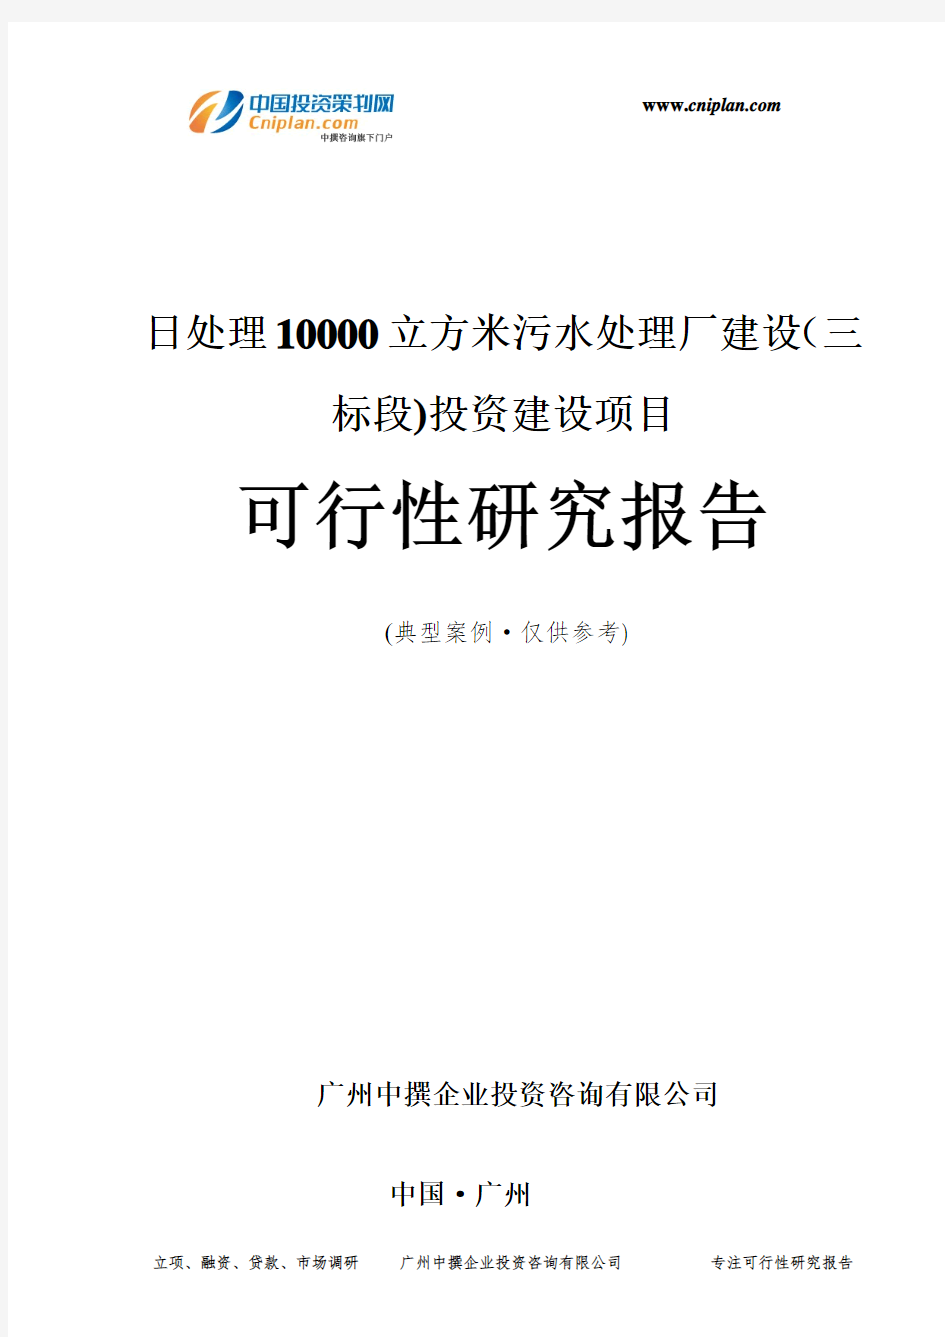 日处理10000立方米污水处理厂建设(三标段)投资建设项目可行性研究报告-广州中撰咨询